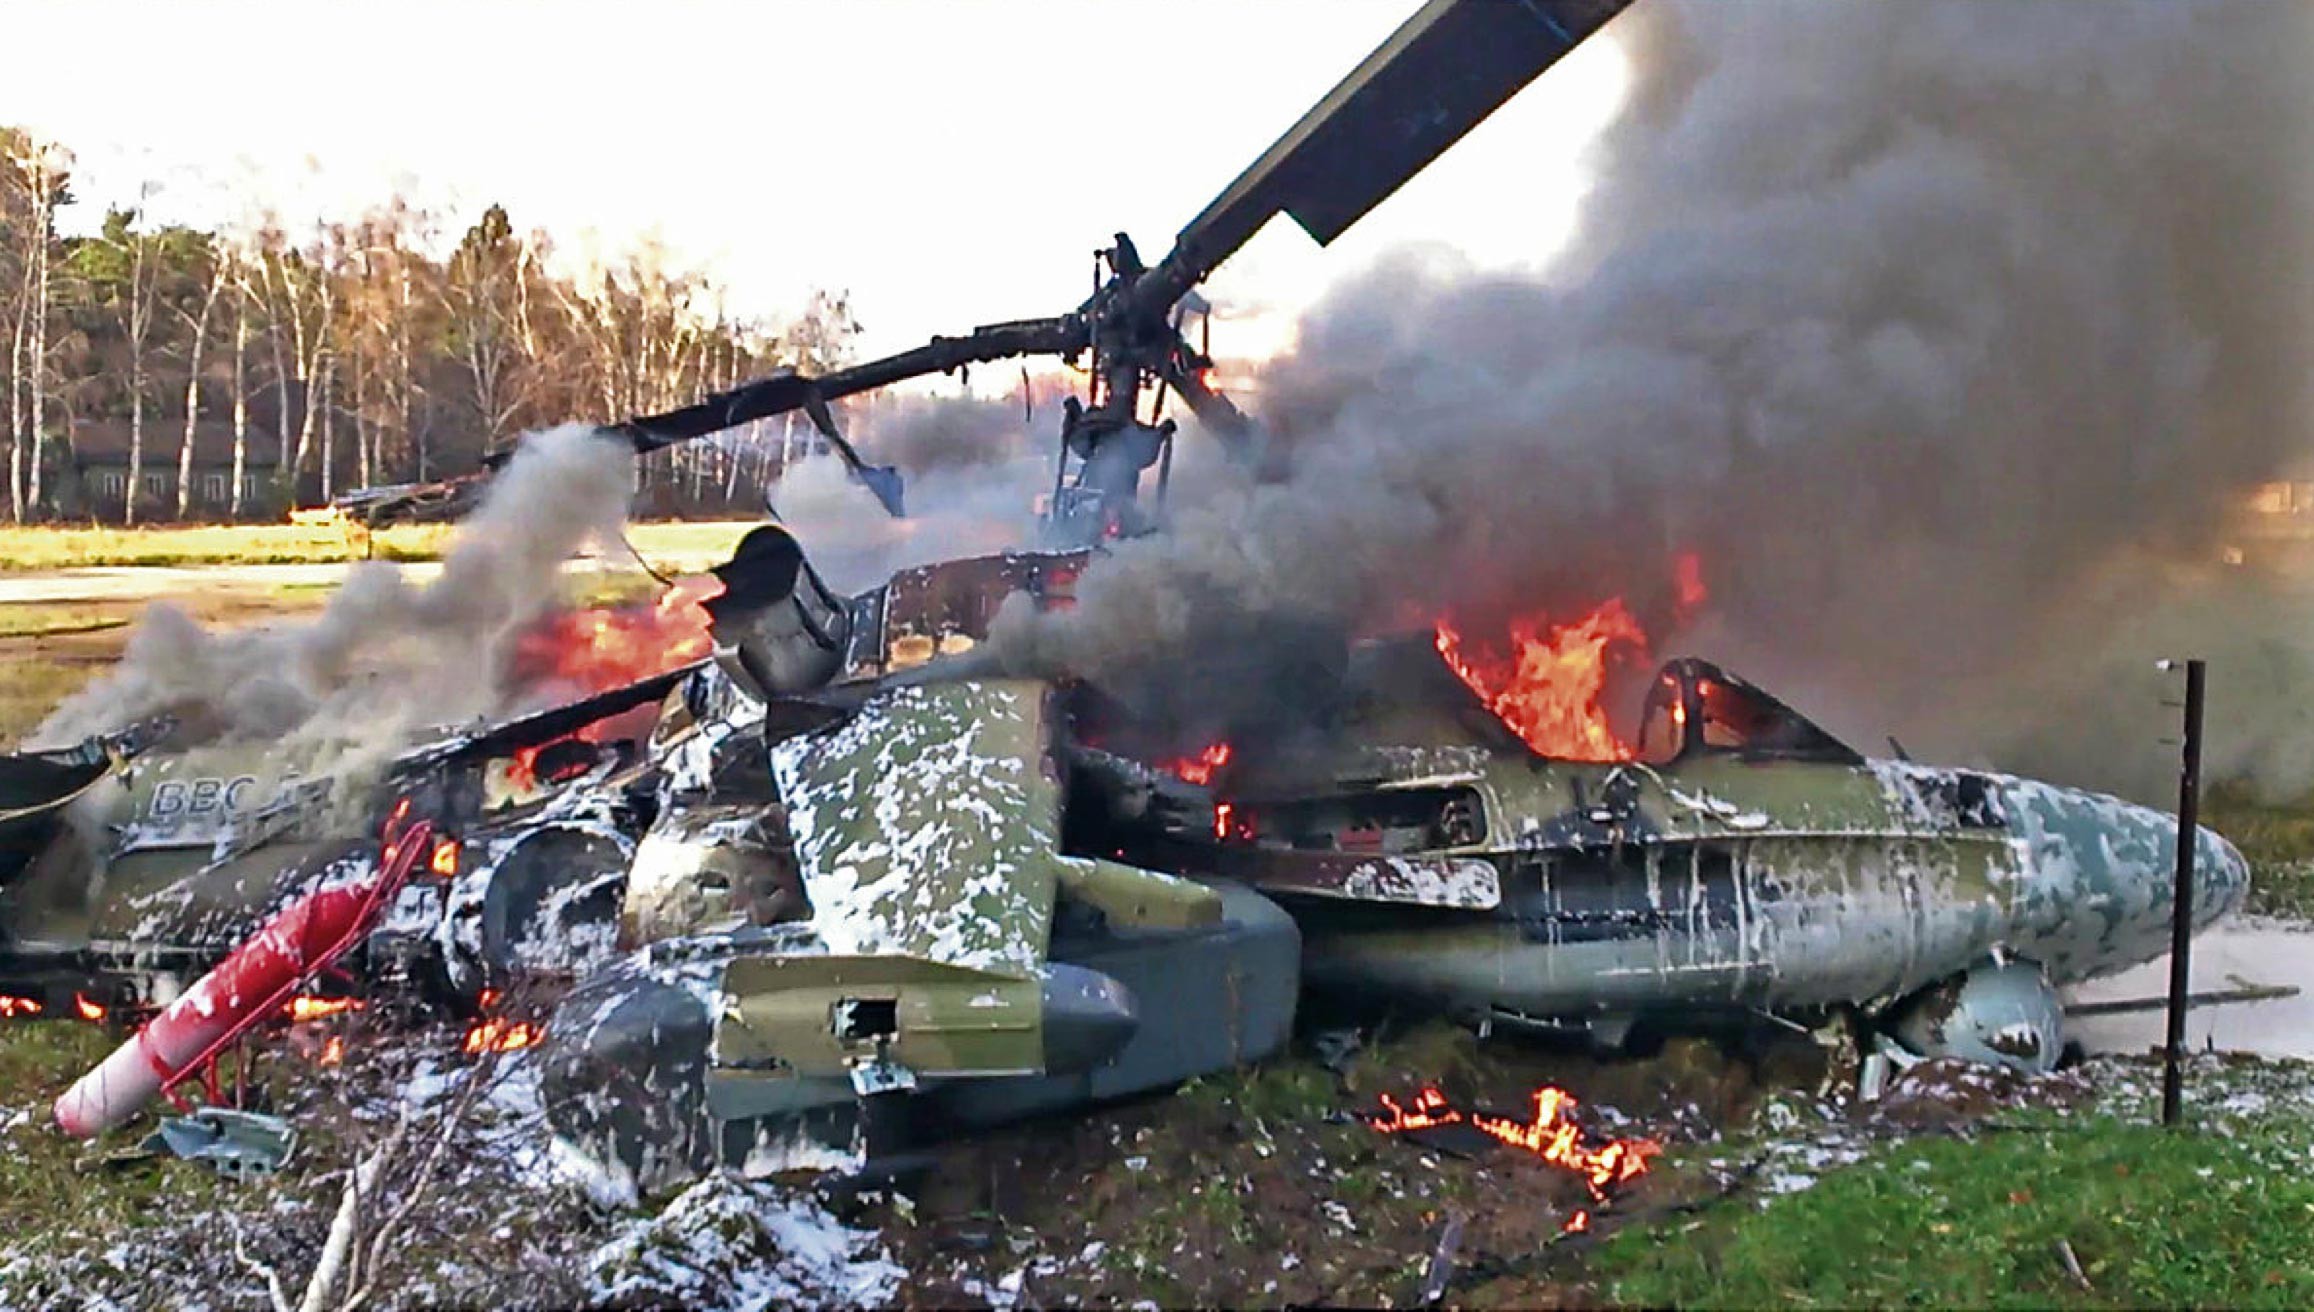 Сбитый самолет сегодня в краснодарском крае. Катастрофа ми24 Карабах. Сбитый вертолёт ми24 в с.Галашки.